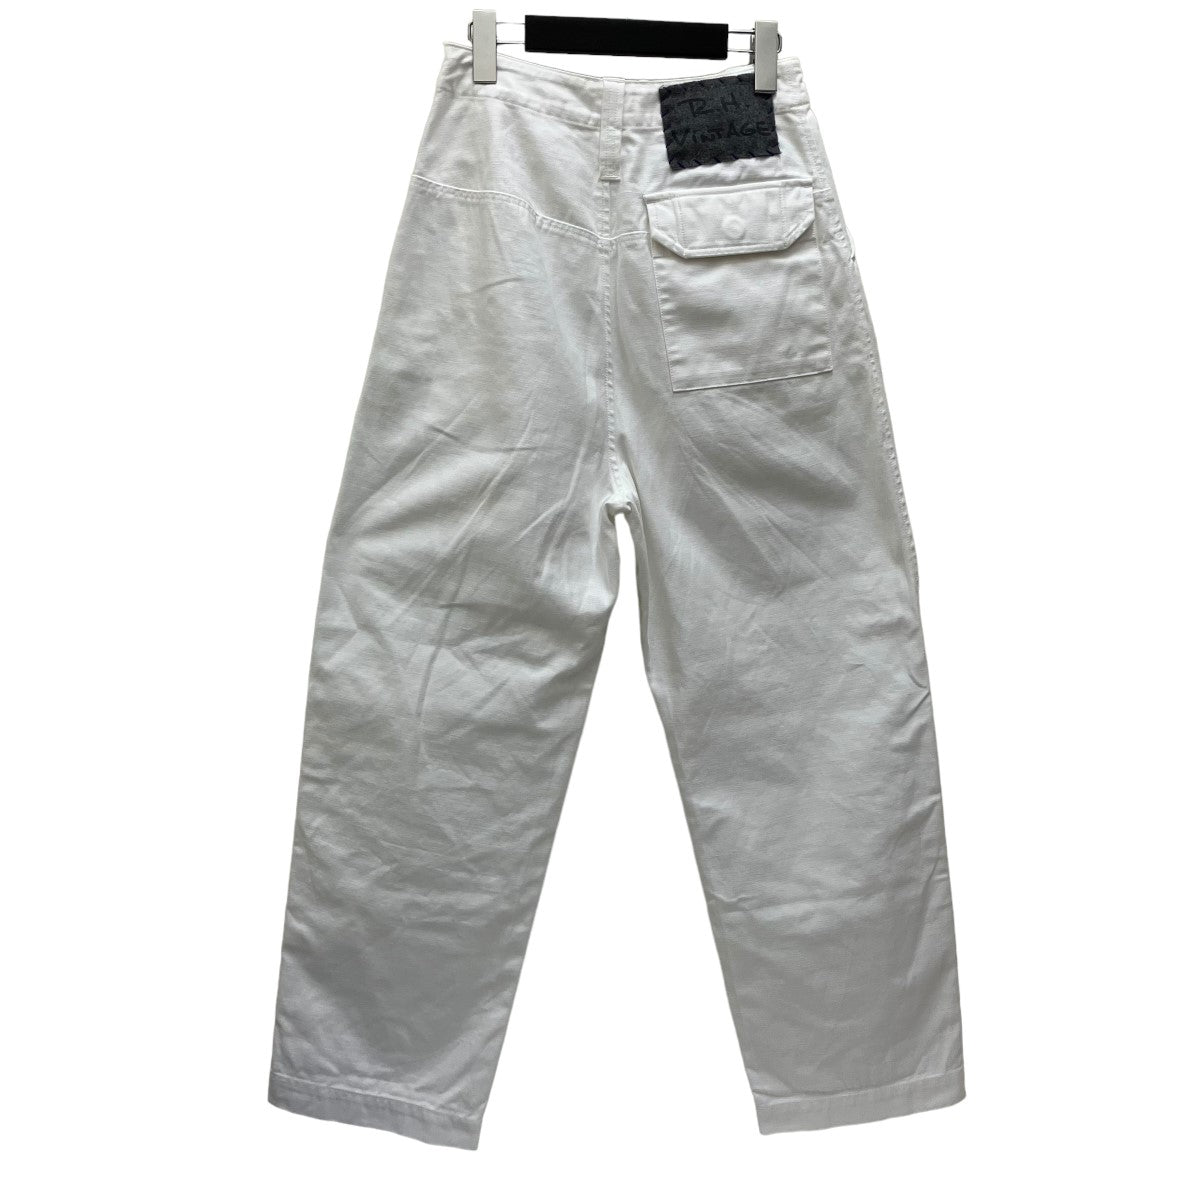 R．H．Vintage(ロンハーマンビンテージ) Military Chino Cargo Pants　チノパンツ3710600422